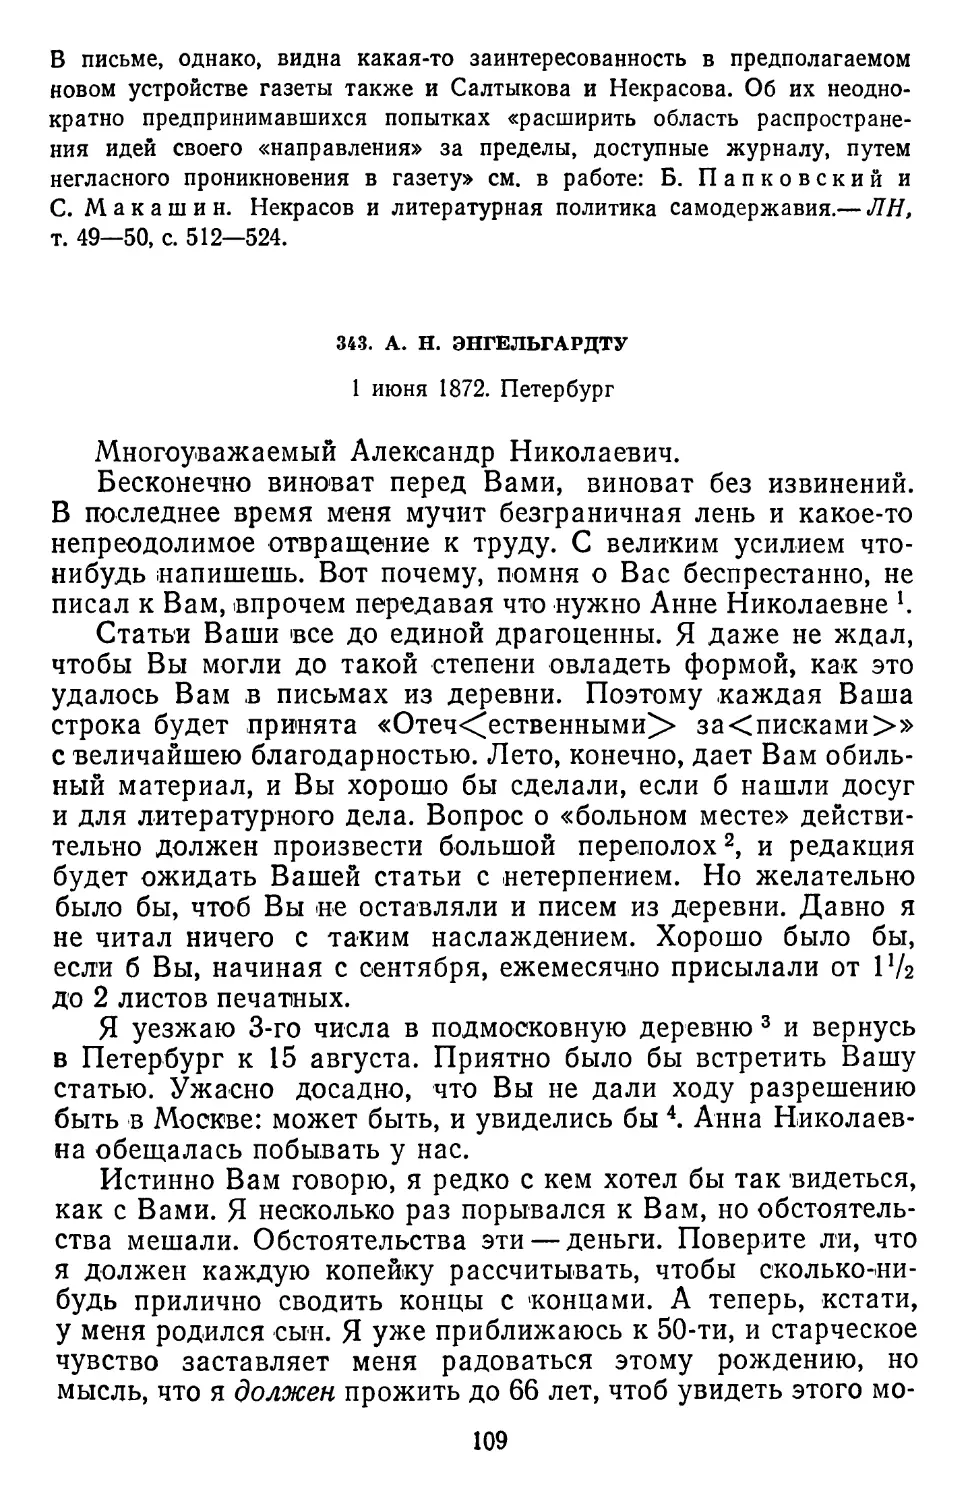 343.А. Н. Энгельгардту. 1 июня 1872. Петербург . ..